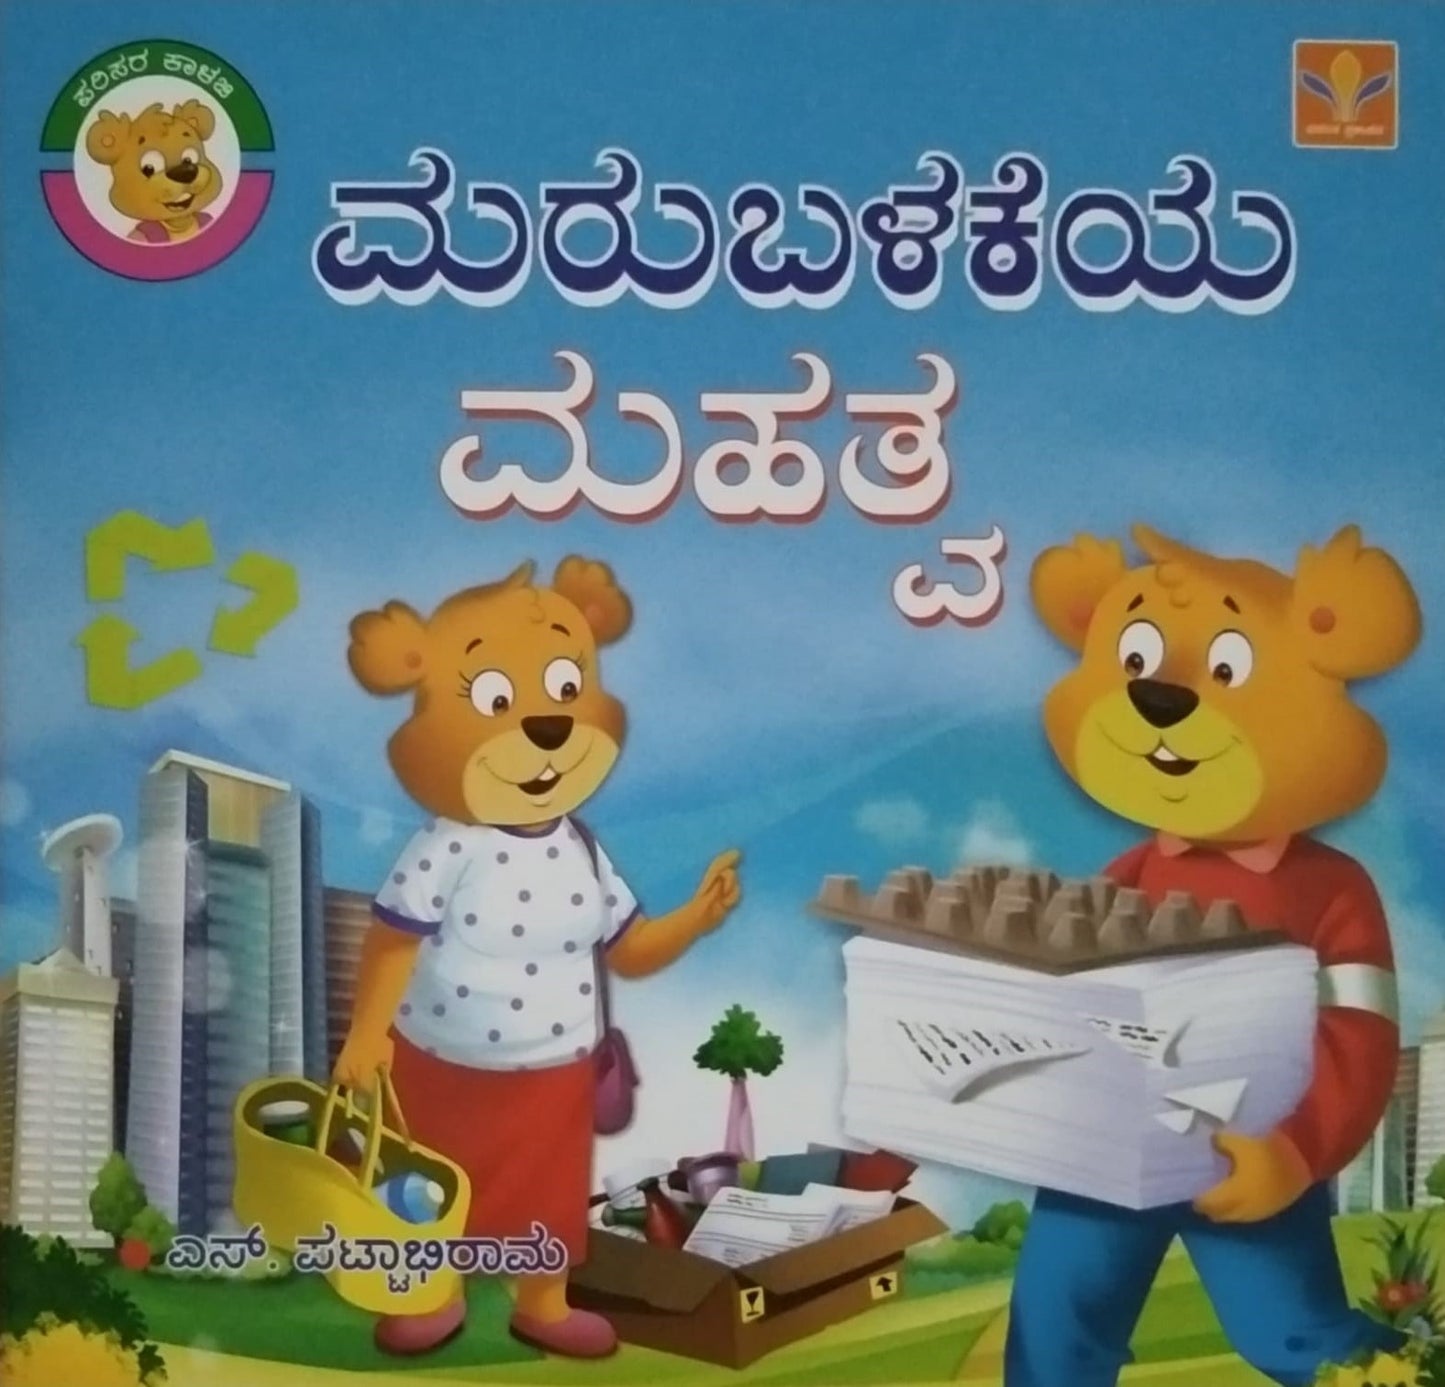 Marubalakeya Mahatva is a Children's Stories Book Witten by S. Pattabhirama and Published by Vasantha Prakashana